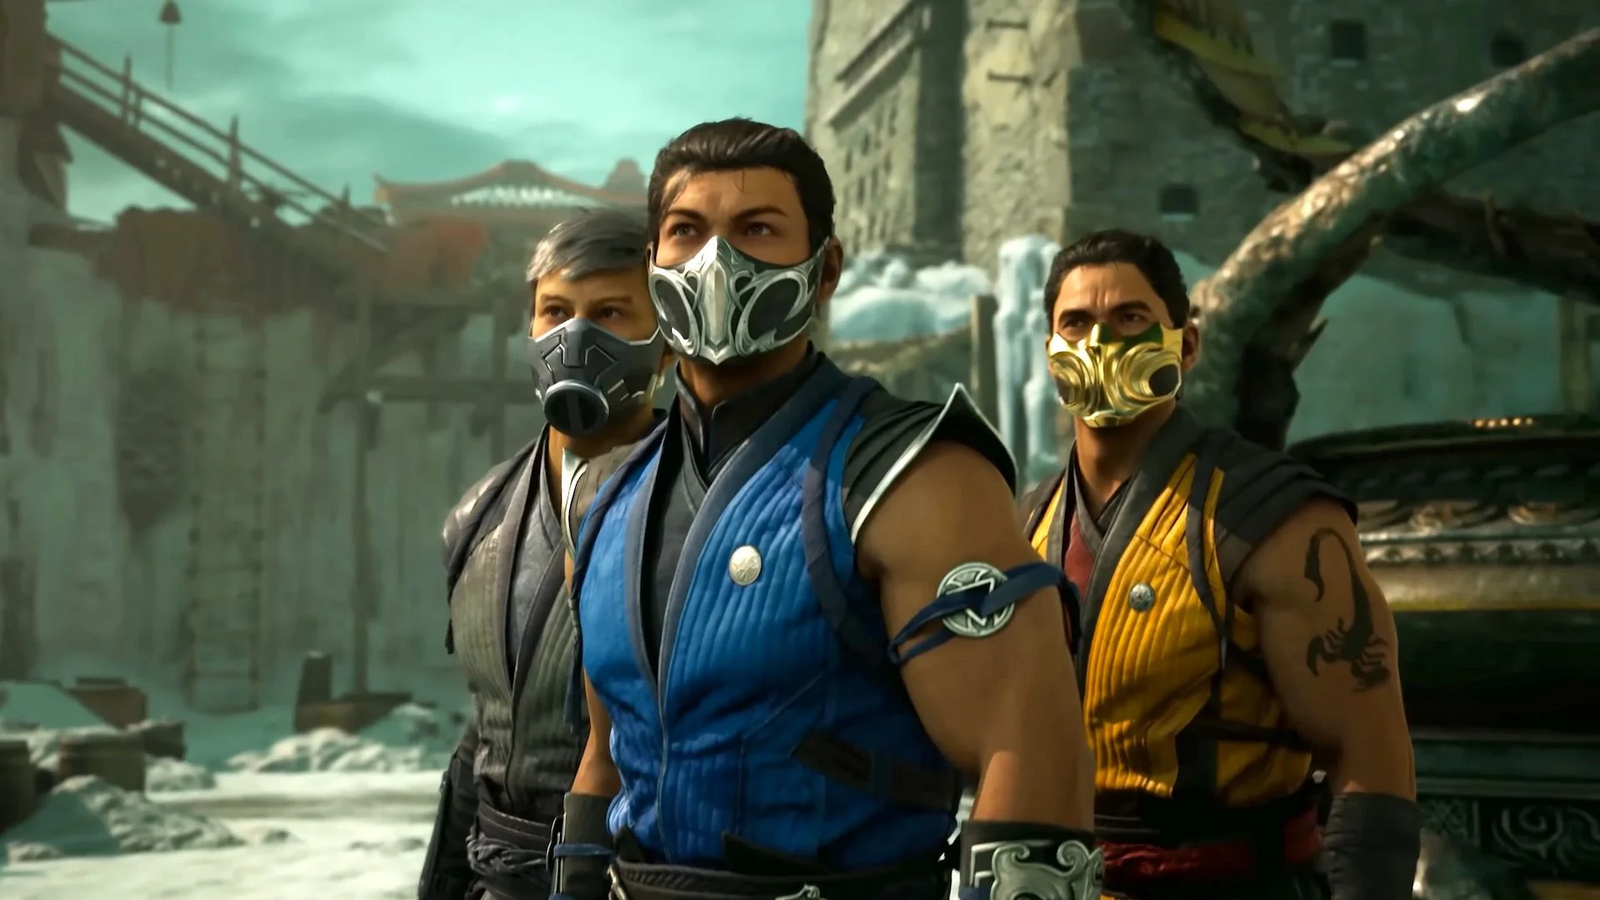 Mortal Kombat 1: Warner Bros. responde críticas com dois